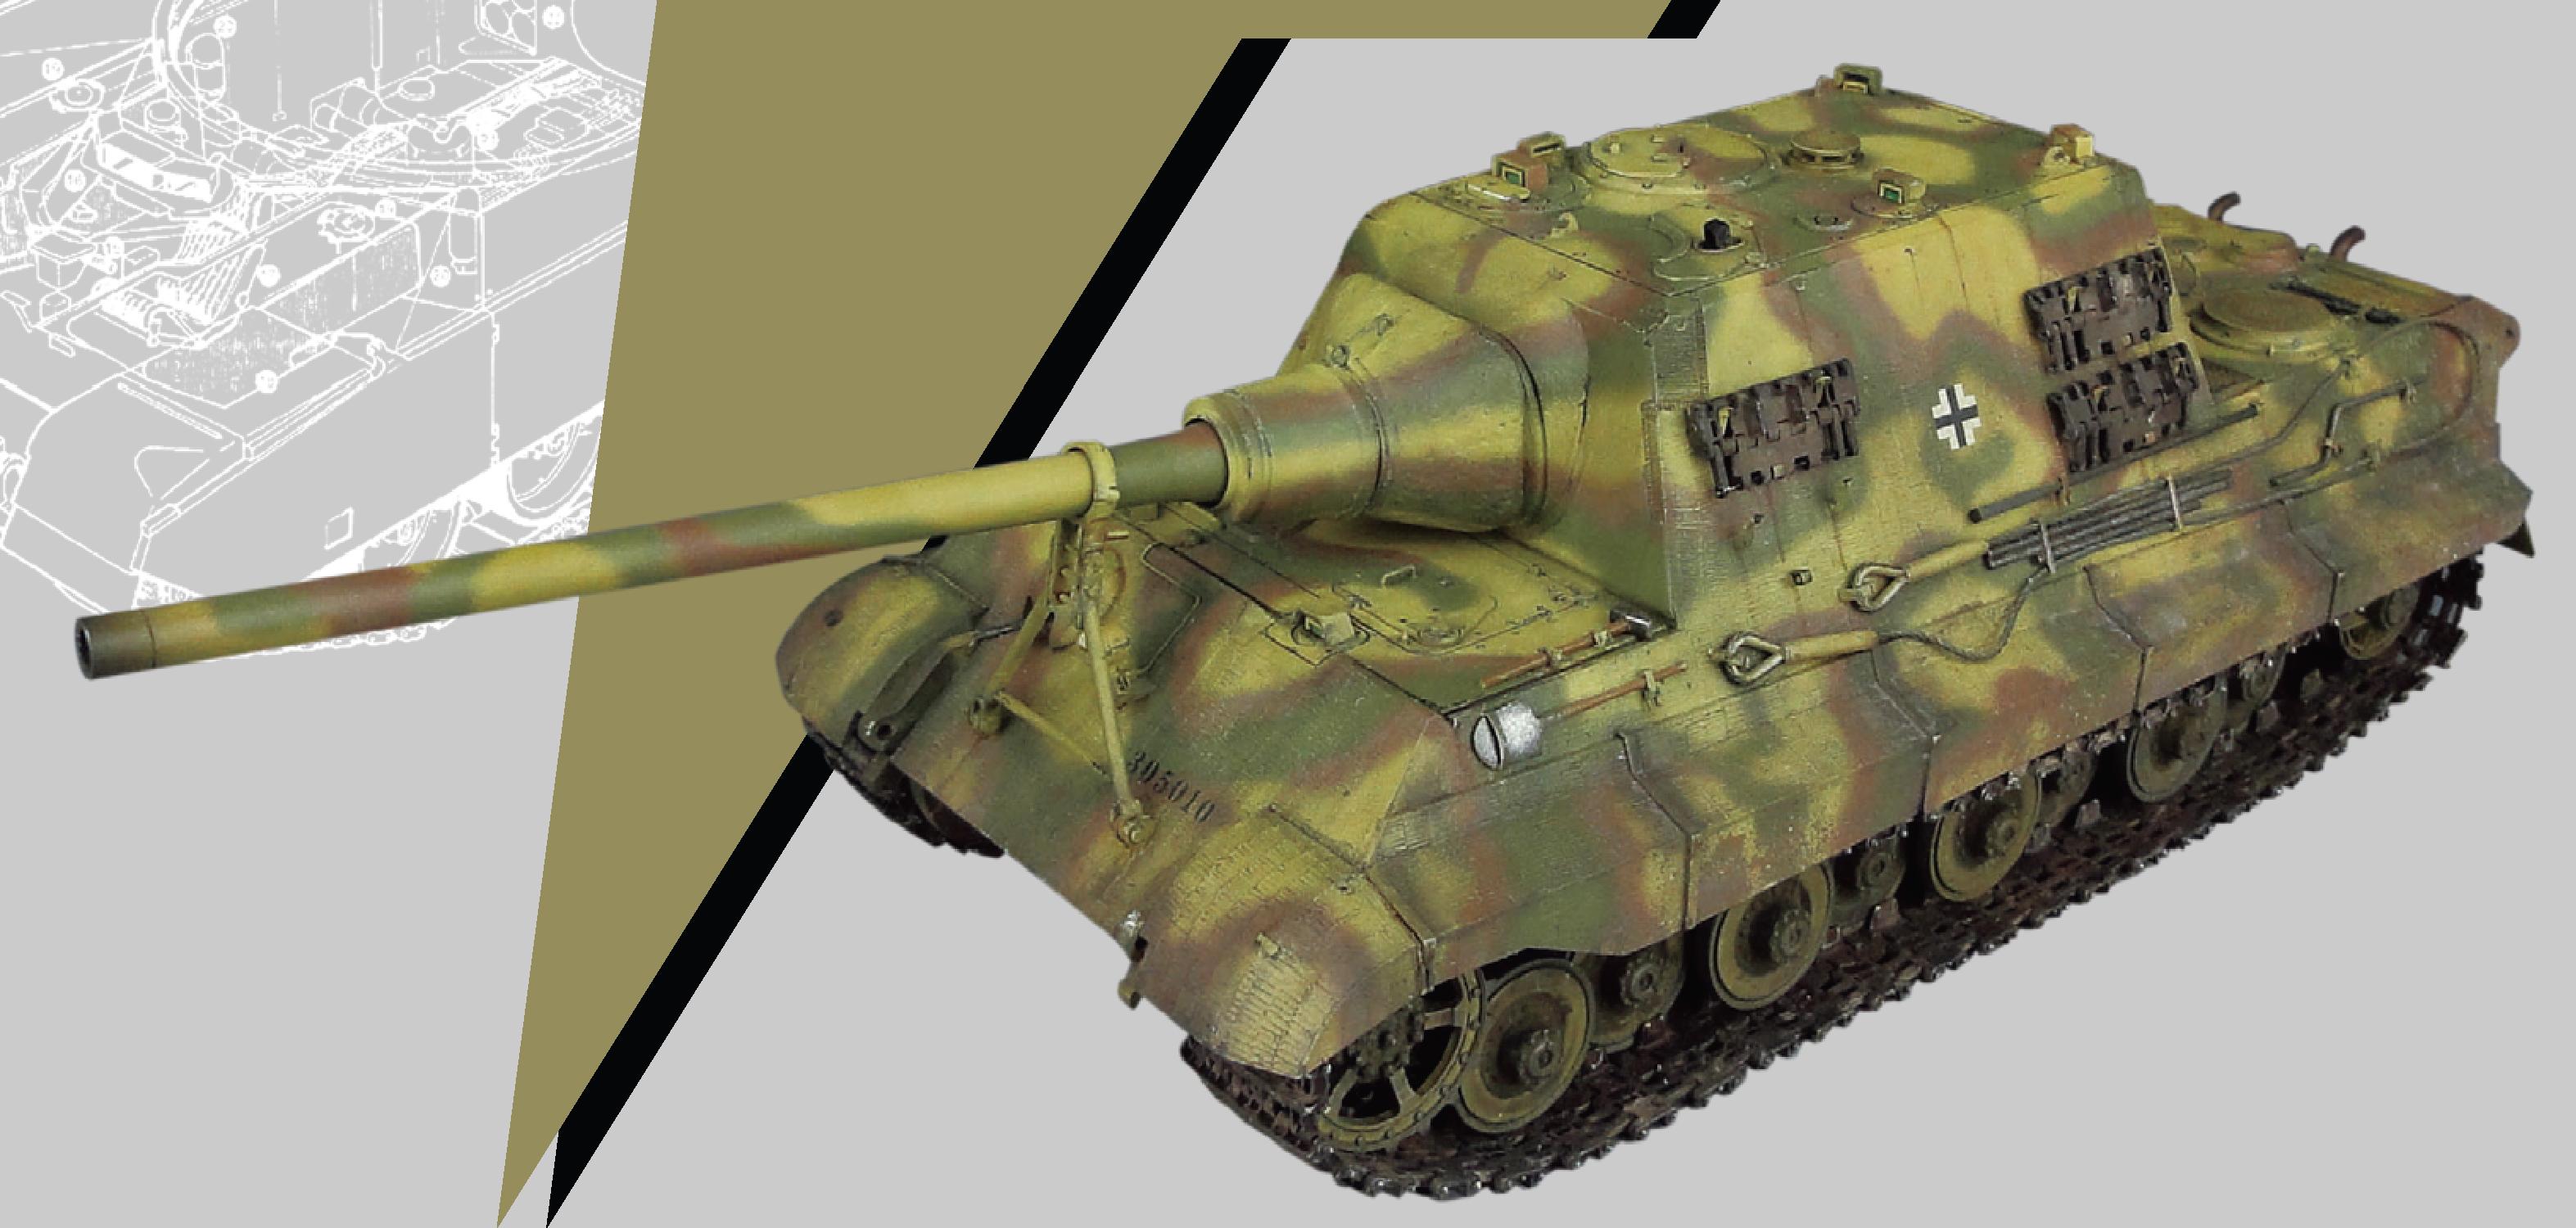 保时捷型“猎虎”坦克歼击车